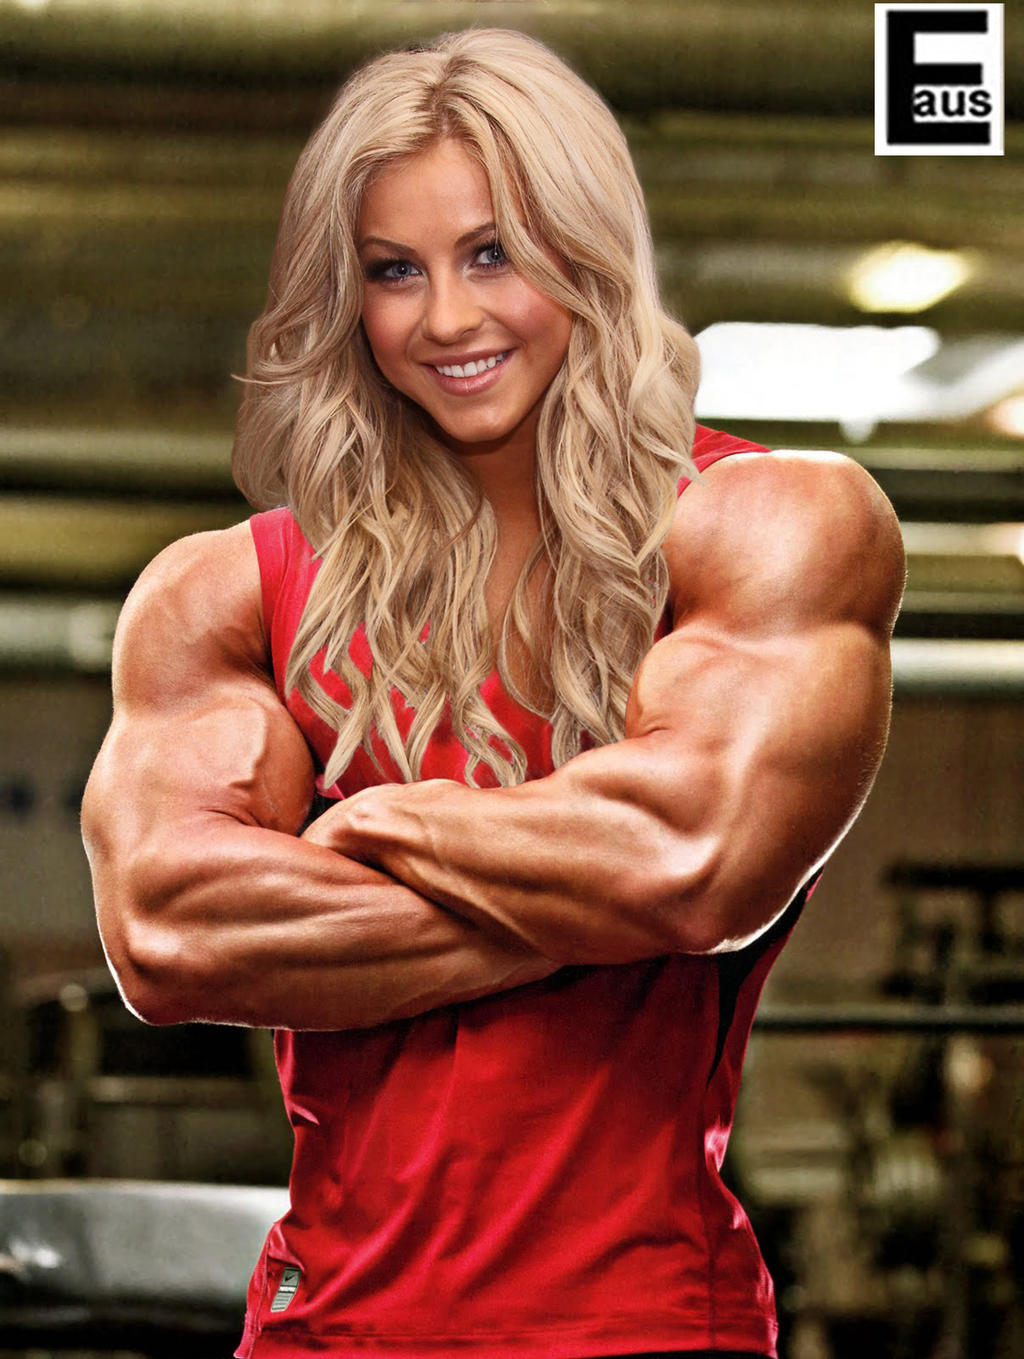 huge_female_bodybuilder_by_edinaus-d4ayort.jpg